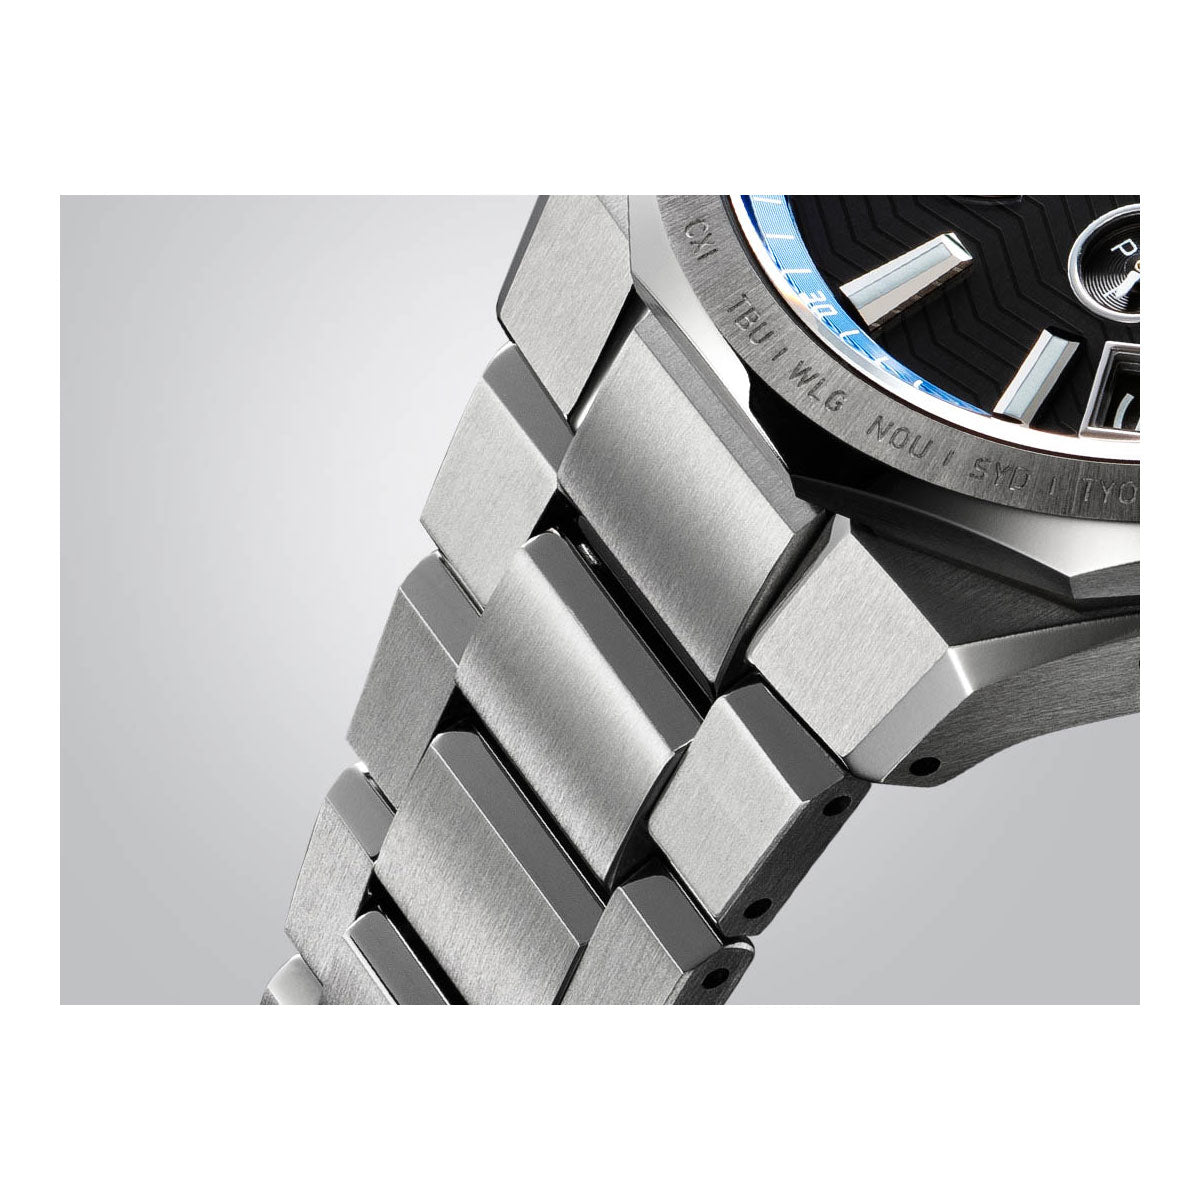 カシオ オシアナス 電波 ソーラー 腕時計 メンズ タフソーラー CASIO OCEANUS CLASSIC LINE OCW-T6000-1AJF Premium Production Line